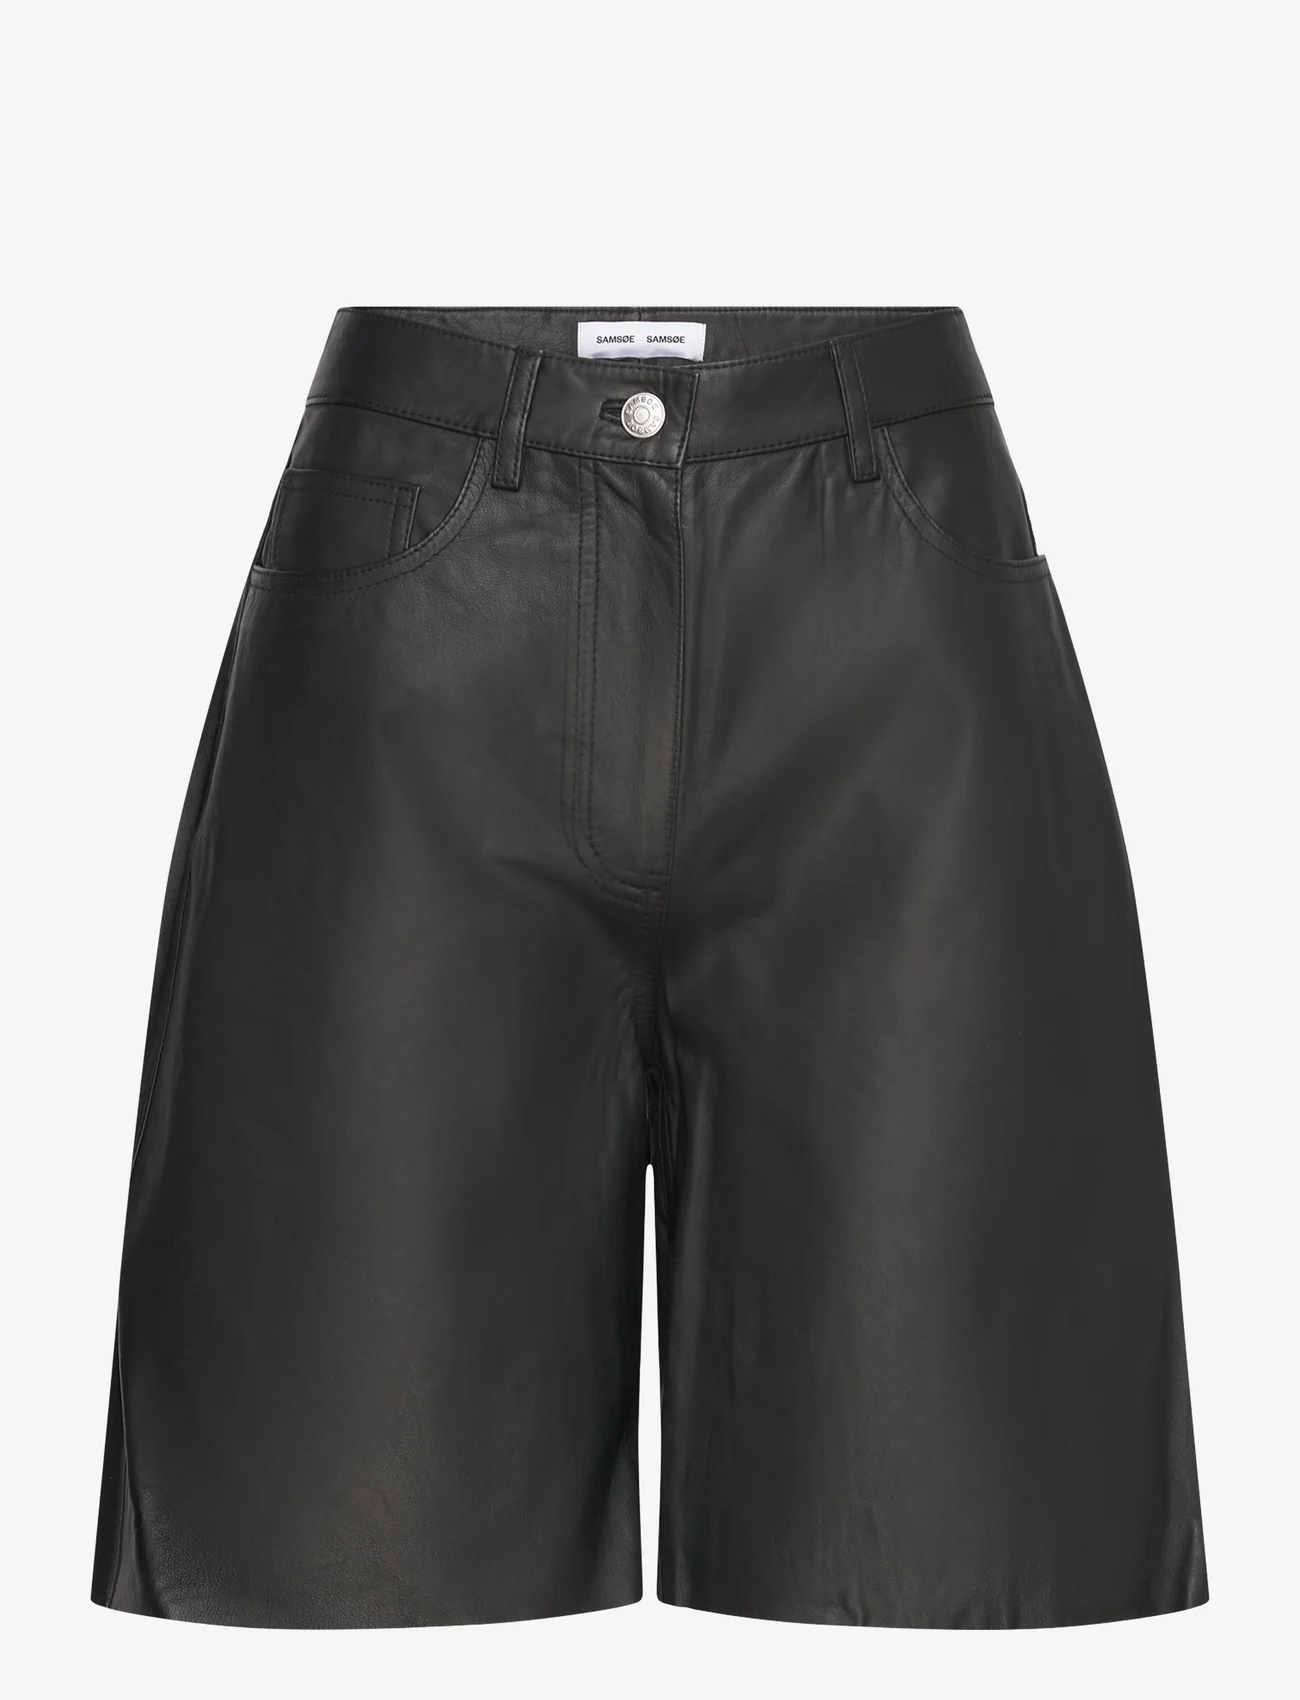 Samsøe Samsøe - Sashelly shorts 15125 - leren shorts - black - 1